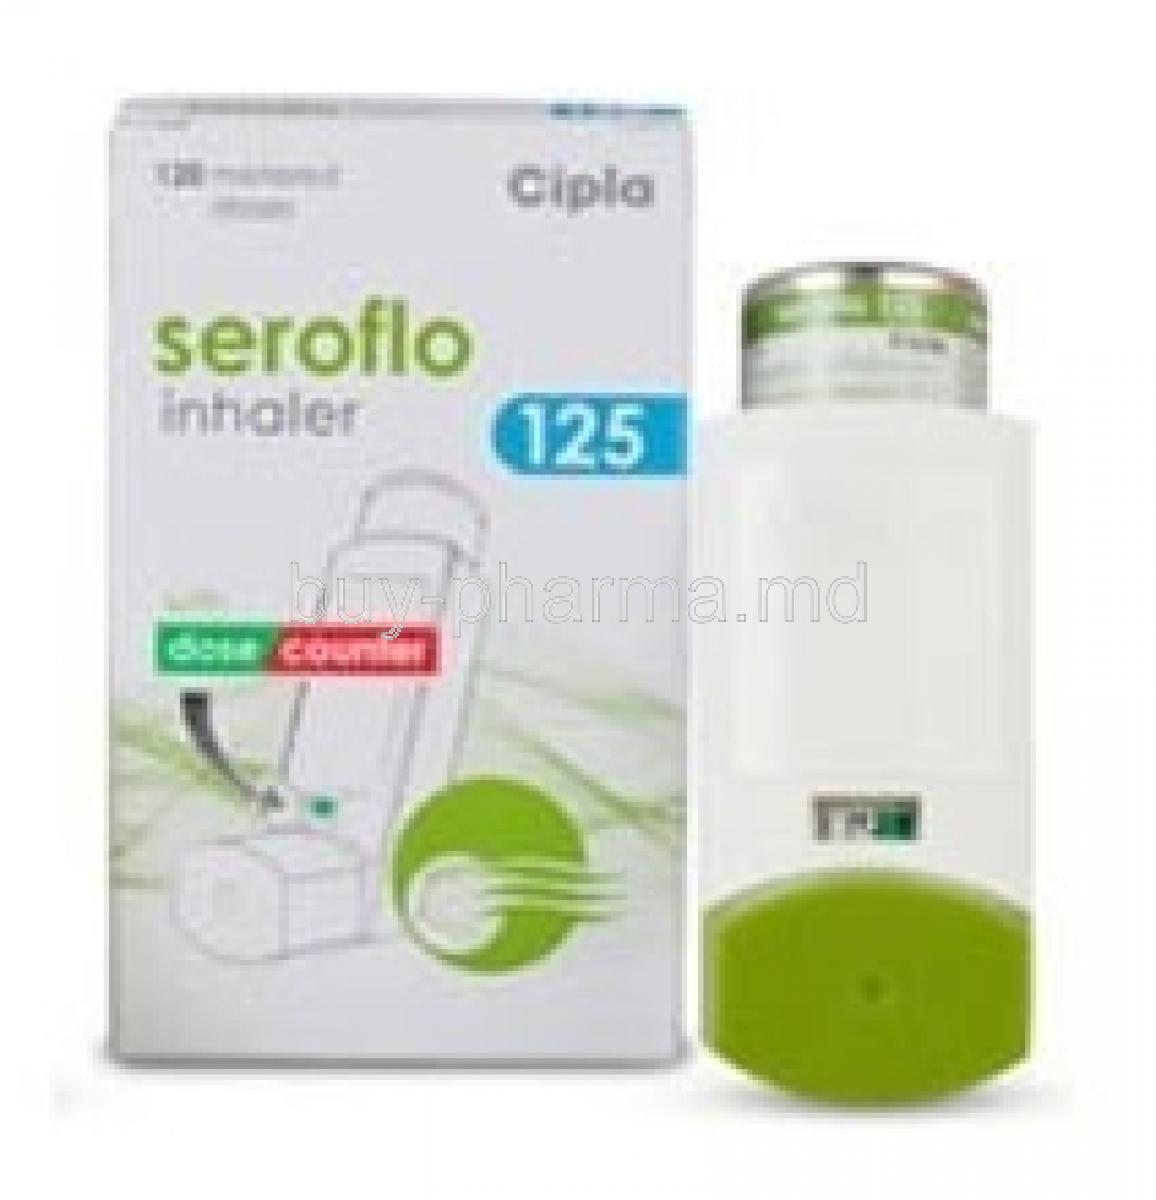 Seroflo Inhaler 125mg box and inhaler